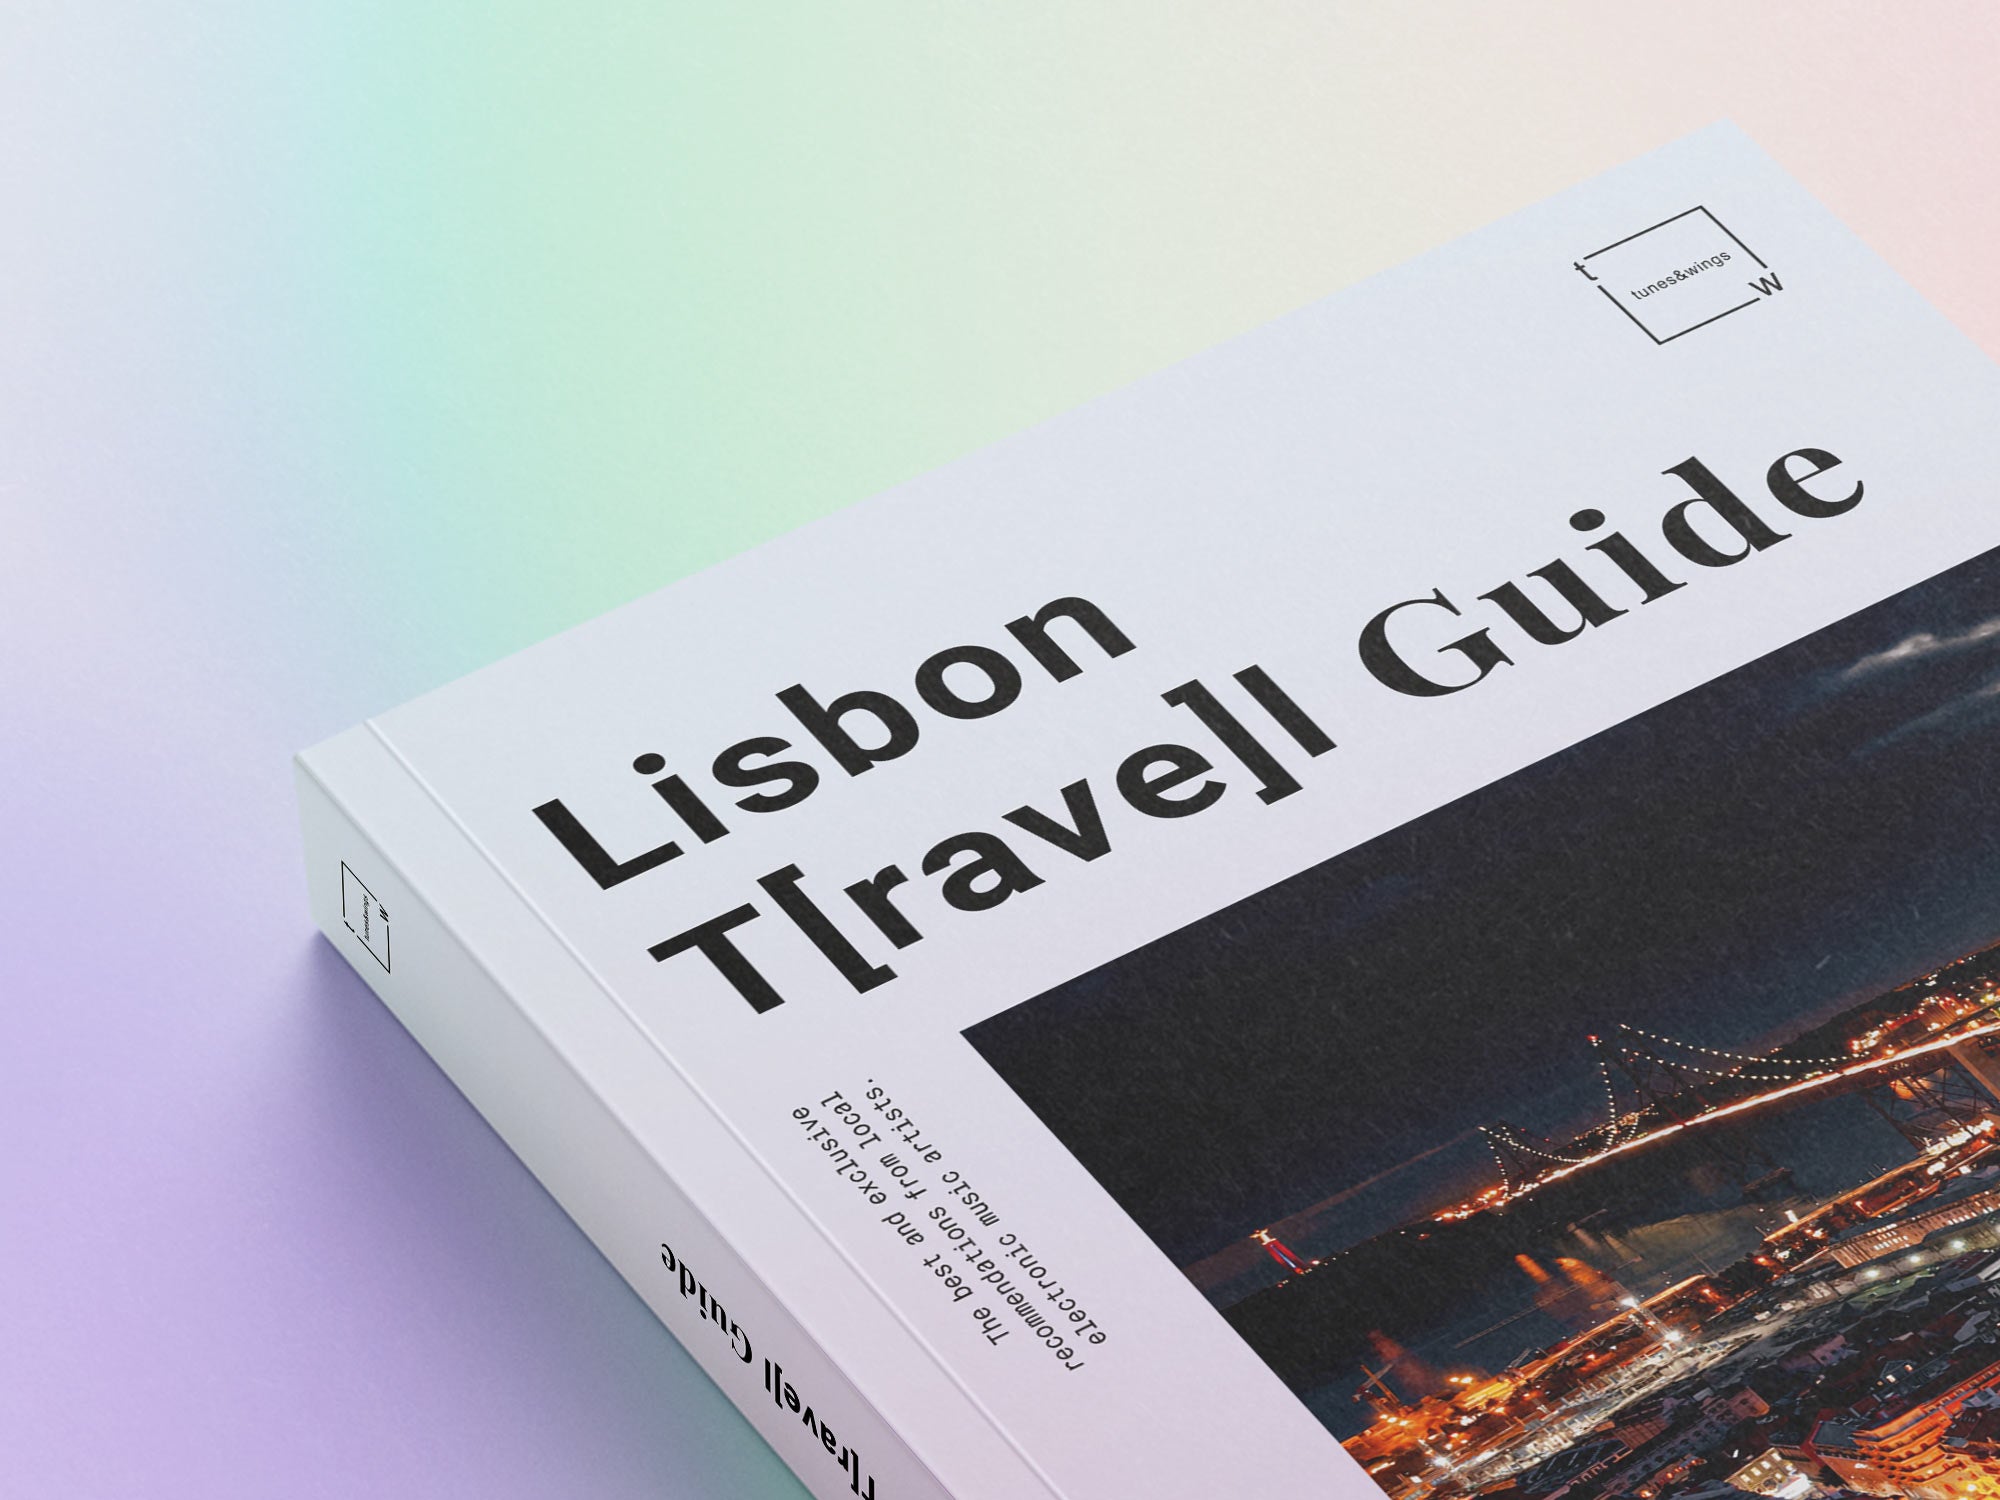 Lisbon T[rave]l Guide